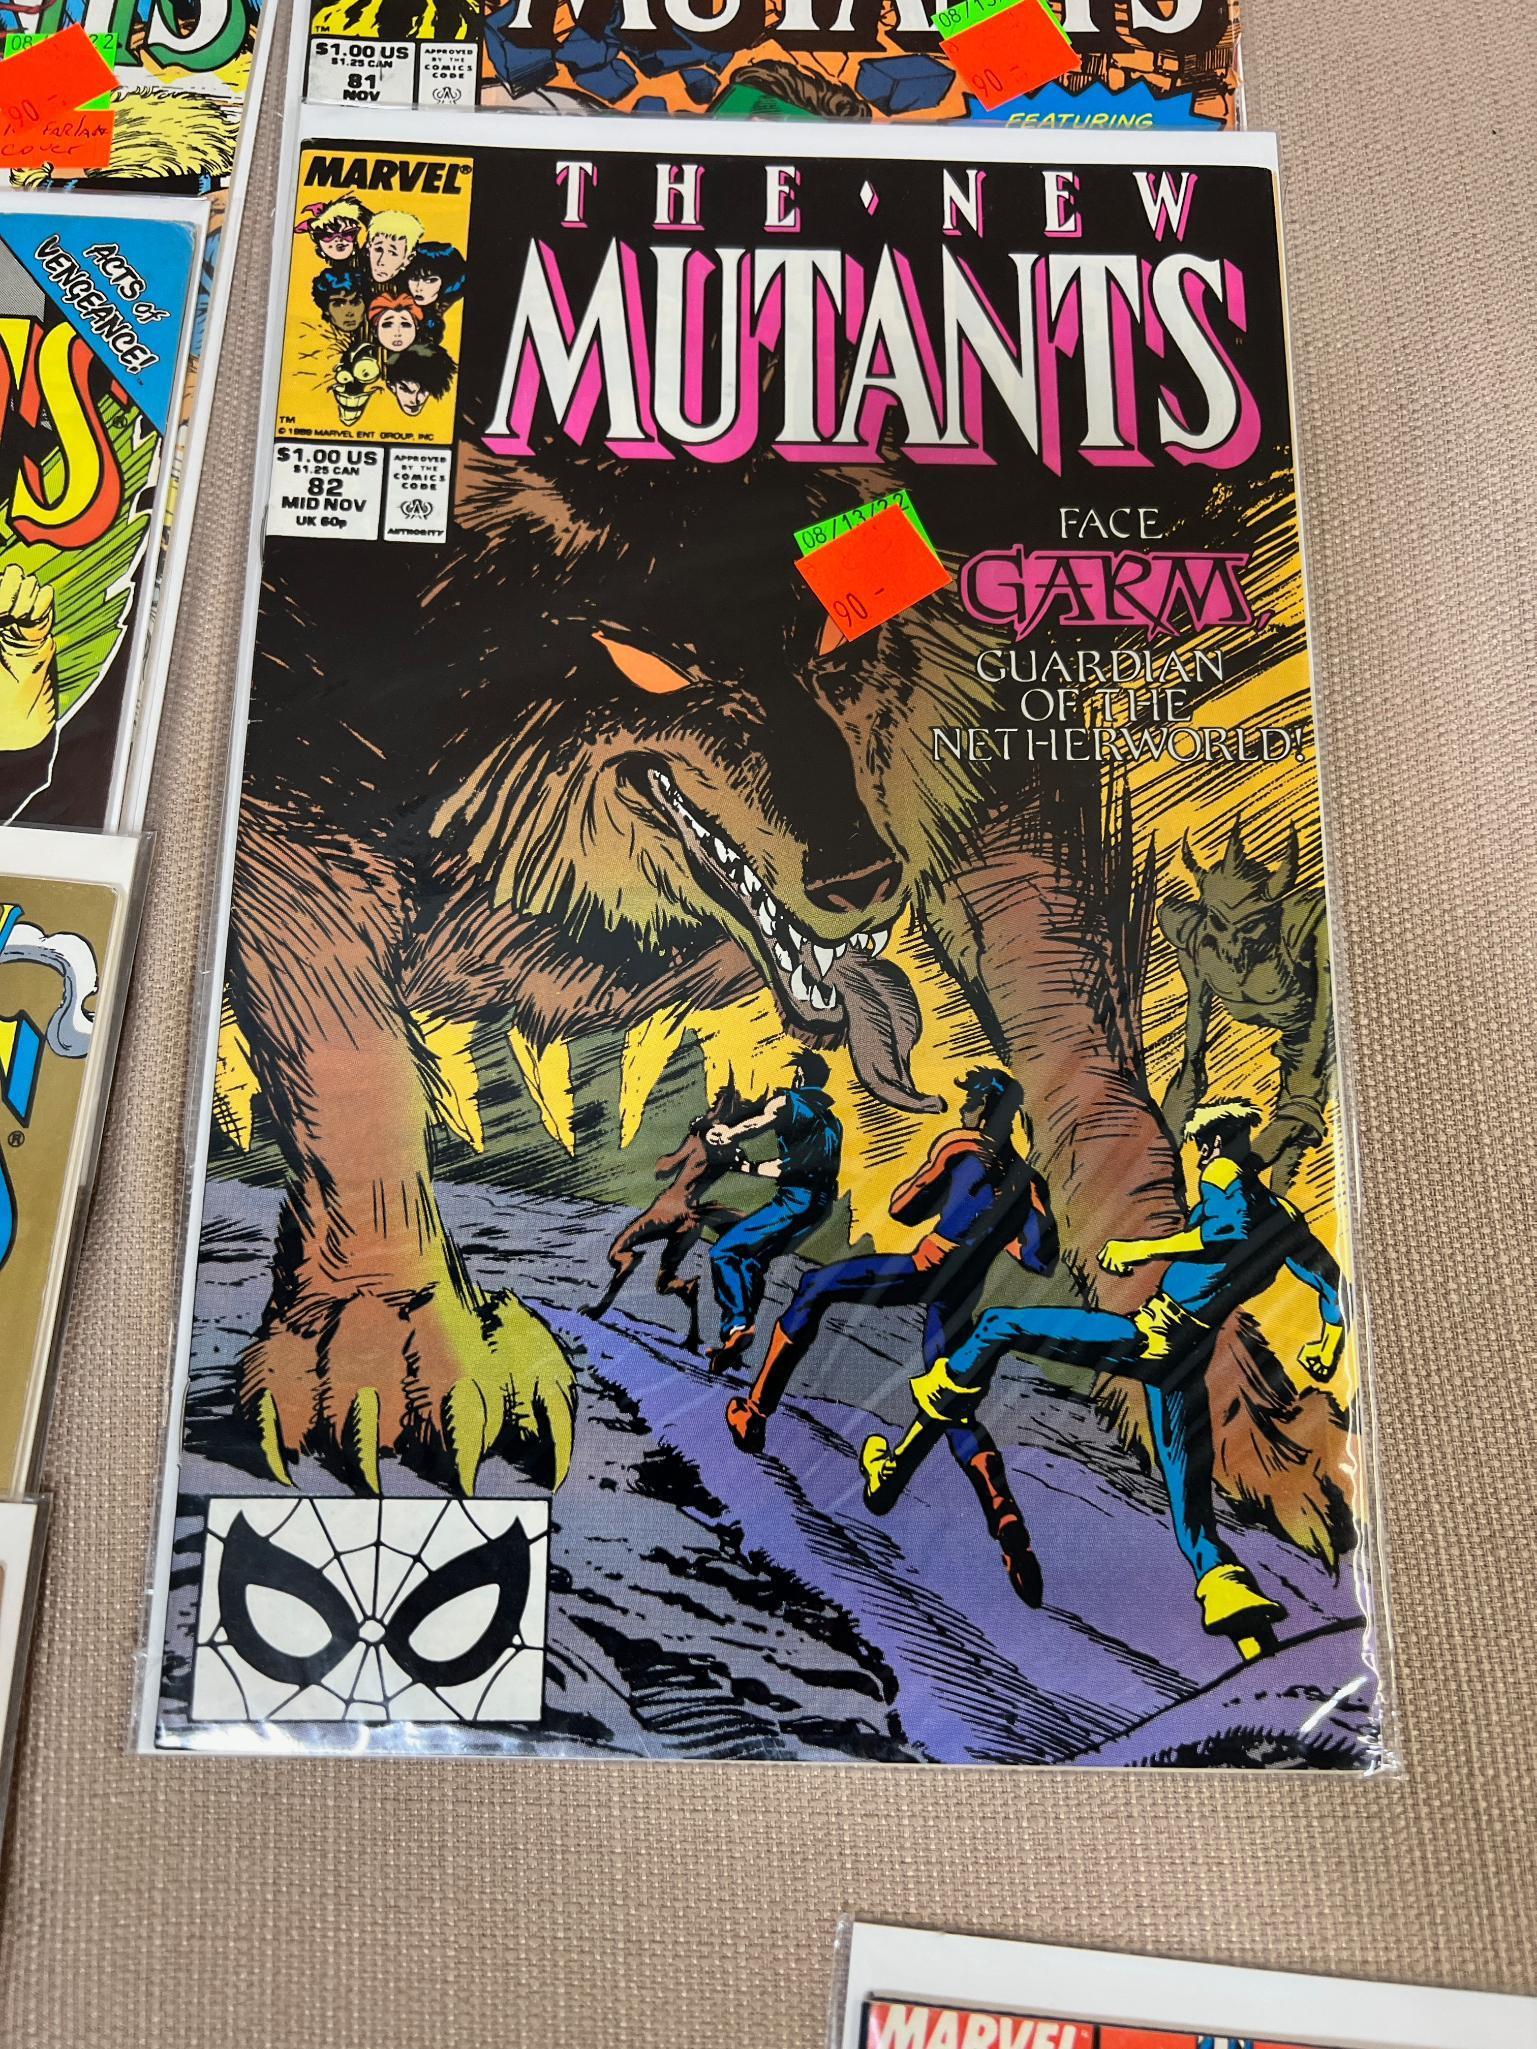 19- The New Mutants Comic Books, issues 81-97, 99, 100